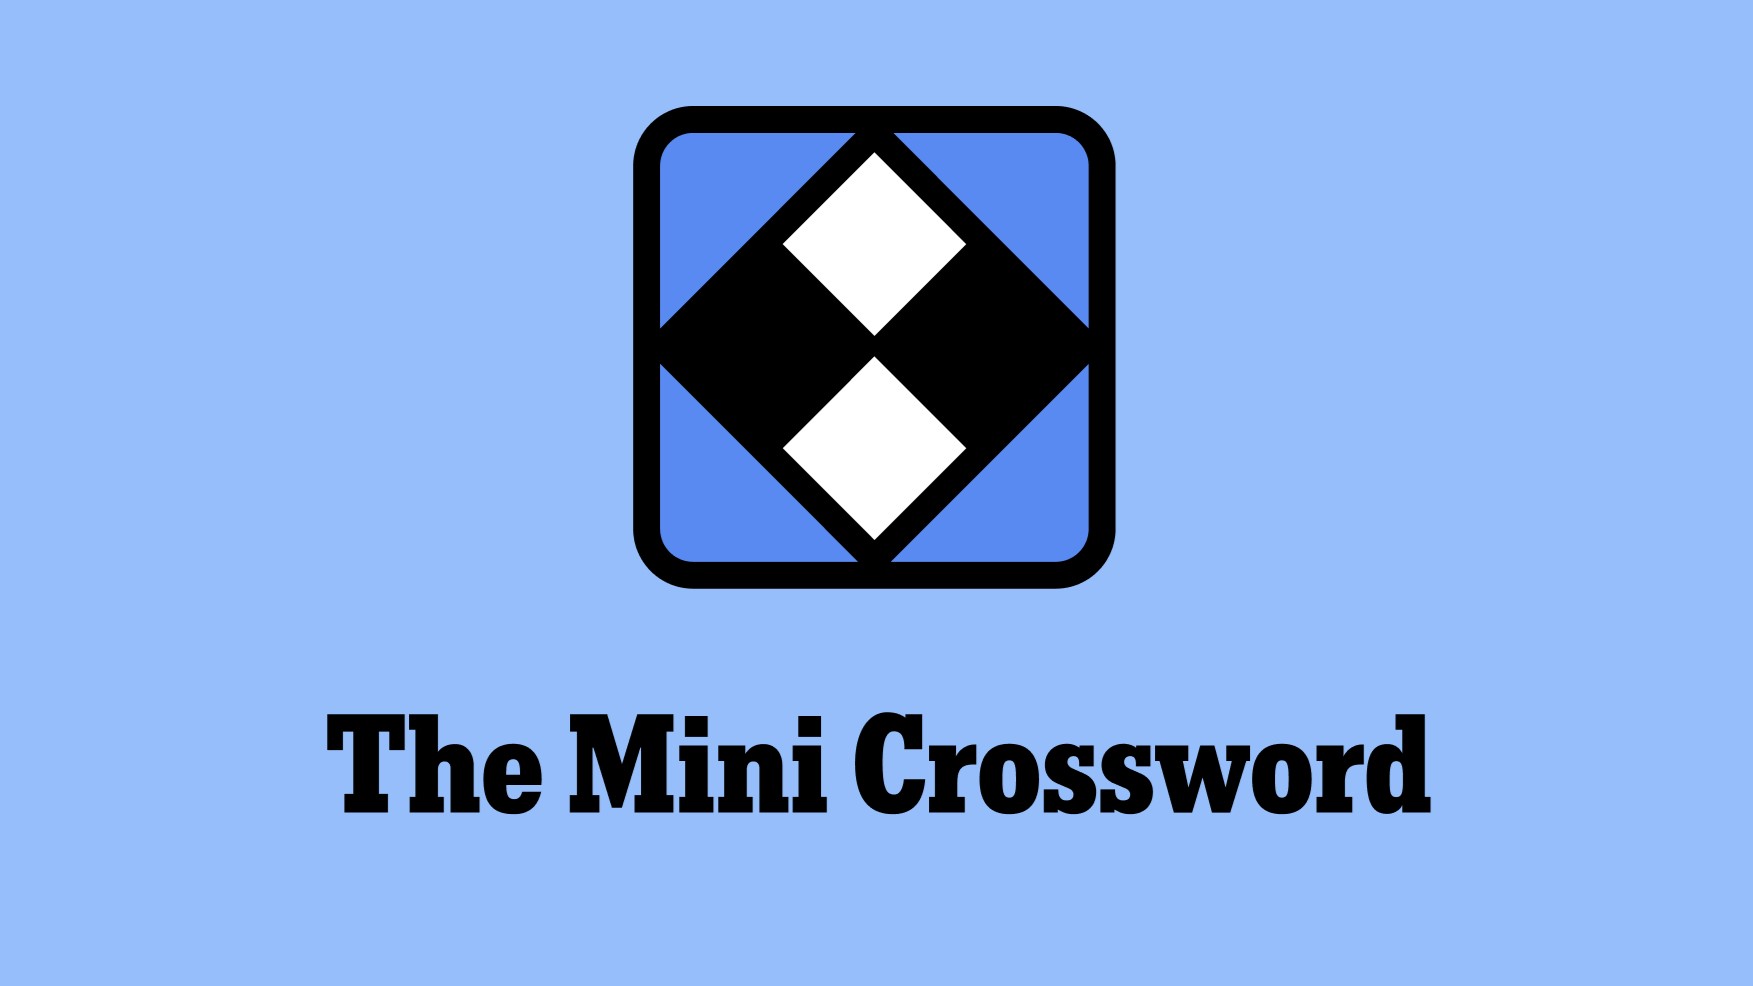 Logotipo do NYT The Mini Crossword.